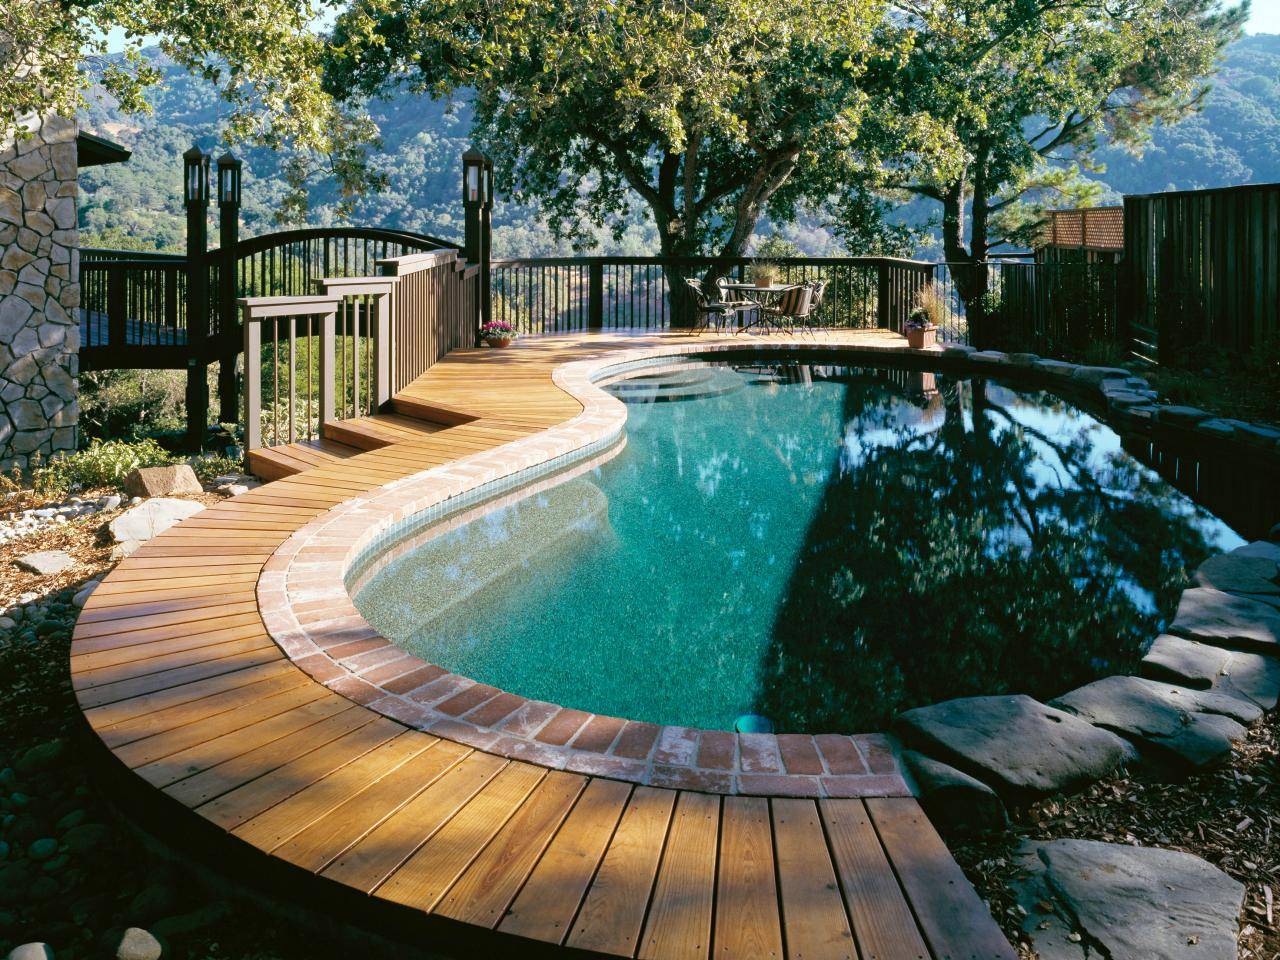 Không gian bể bơi gia đình sở hữu tầm nhìn rộng mở, xanh mát, gần gũi với thiên nhiên.